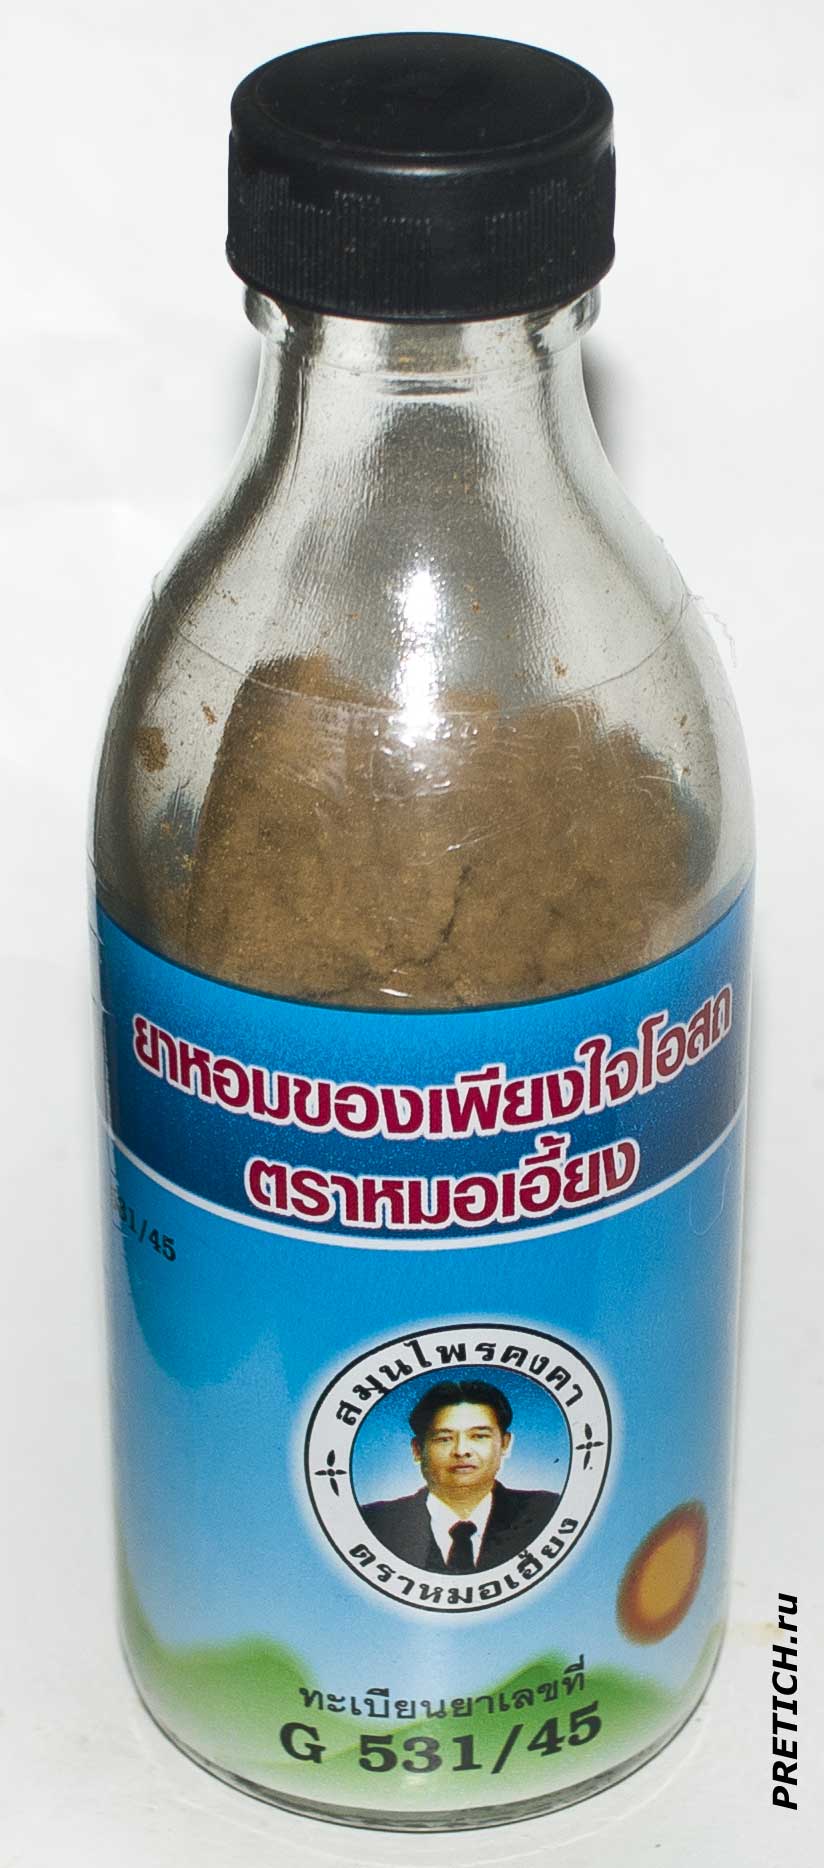 KongkaHerb G 531/45 описание тайского травяного бальзама